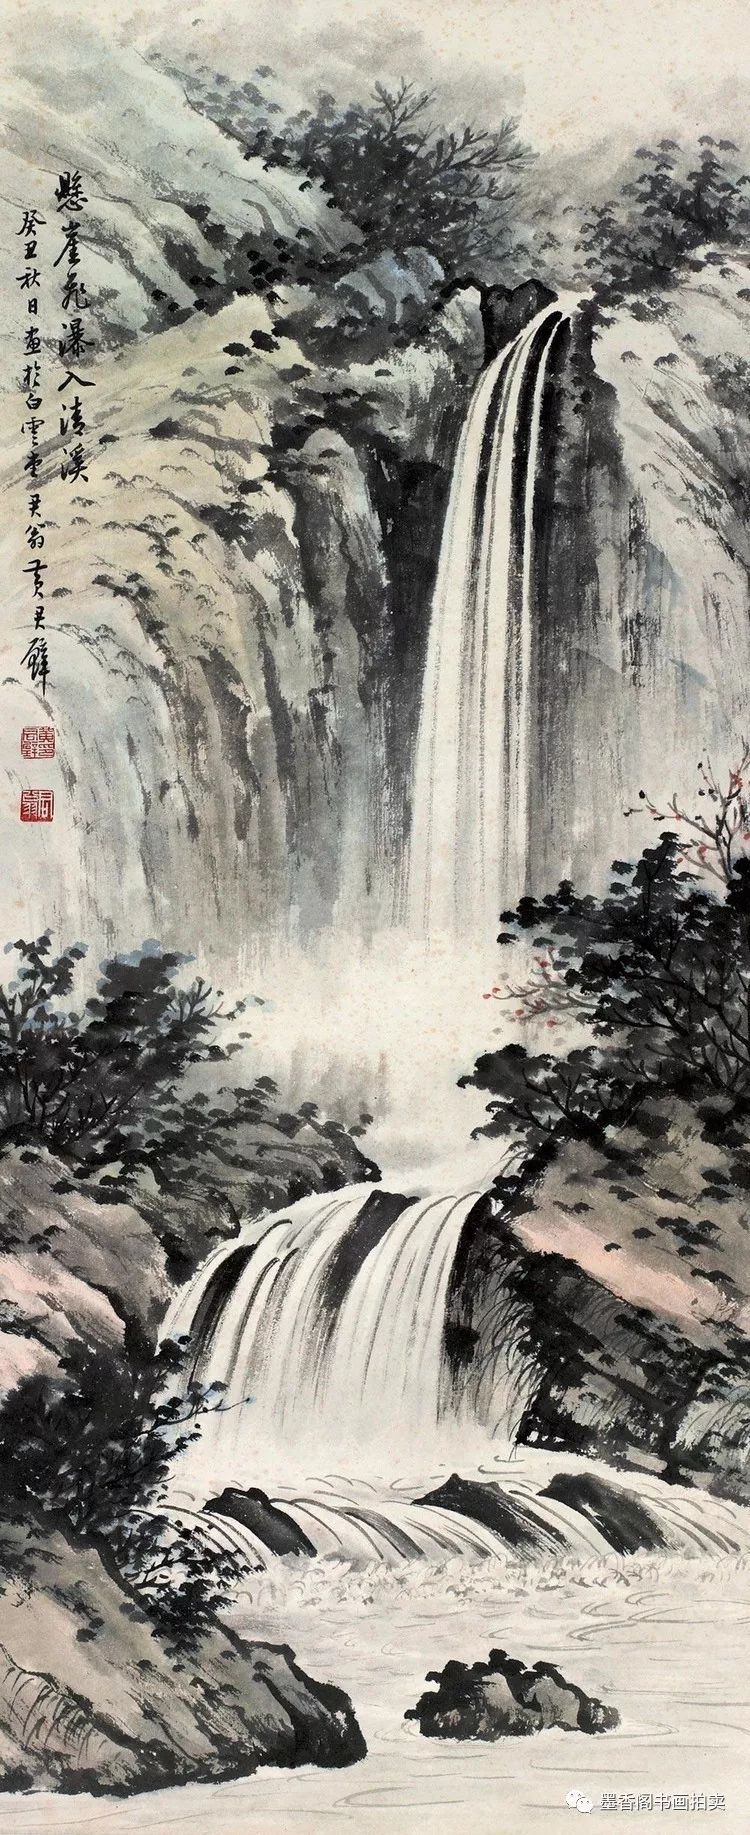 黄君璧是一代山水画大师,尤以画云水瀑布为长.